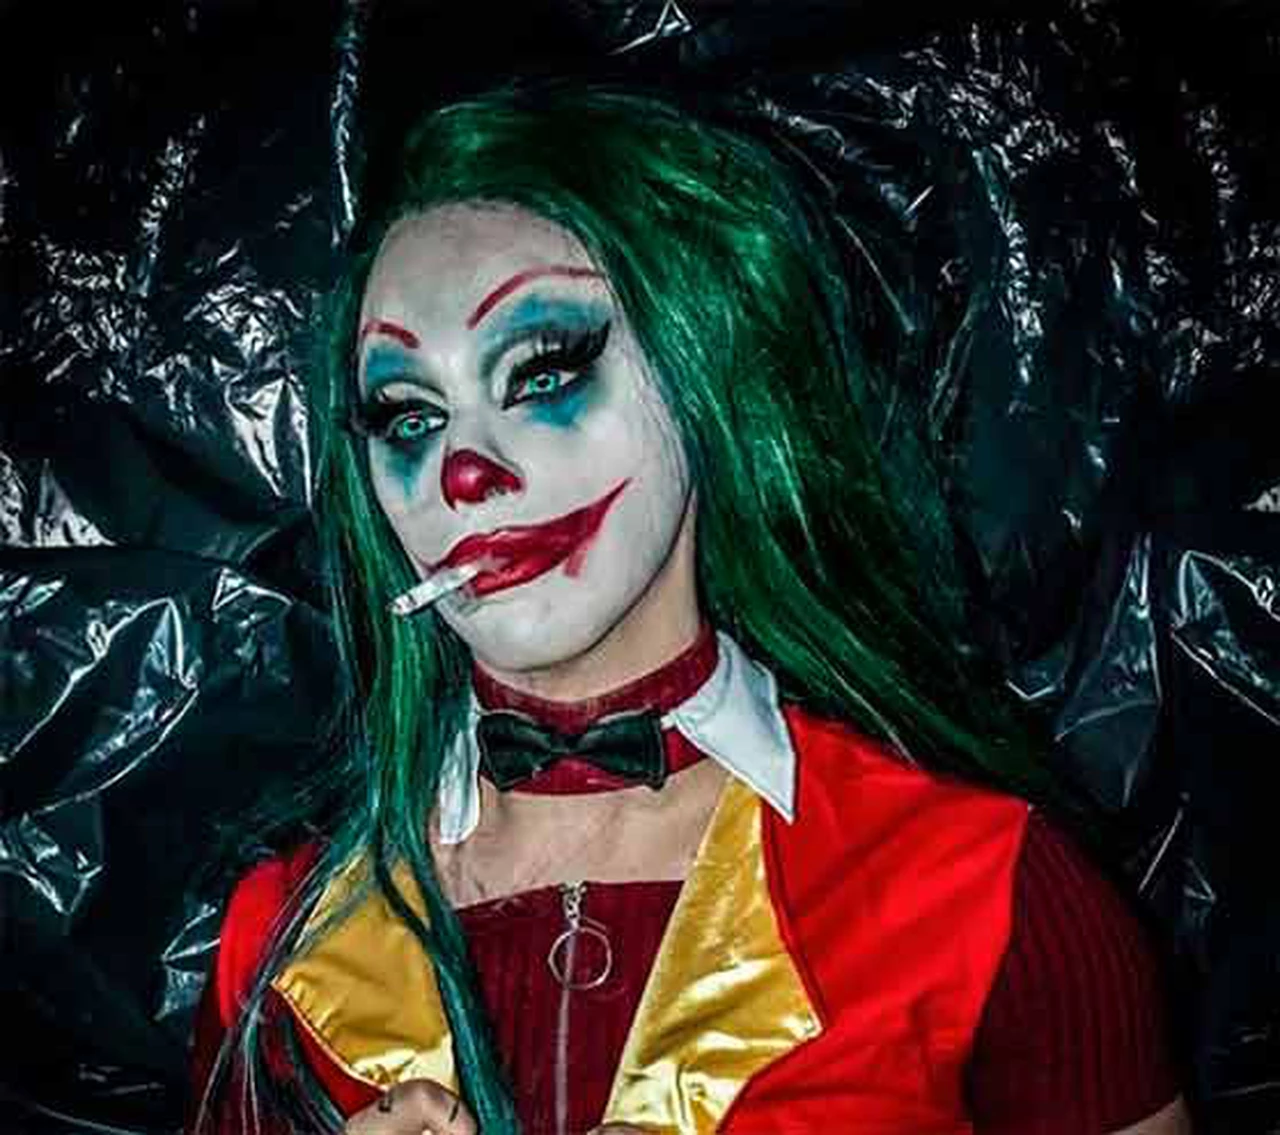 El hijo de Alberto Fernández celebró Halloween disfrazado de "Joker" y estallaron las redes